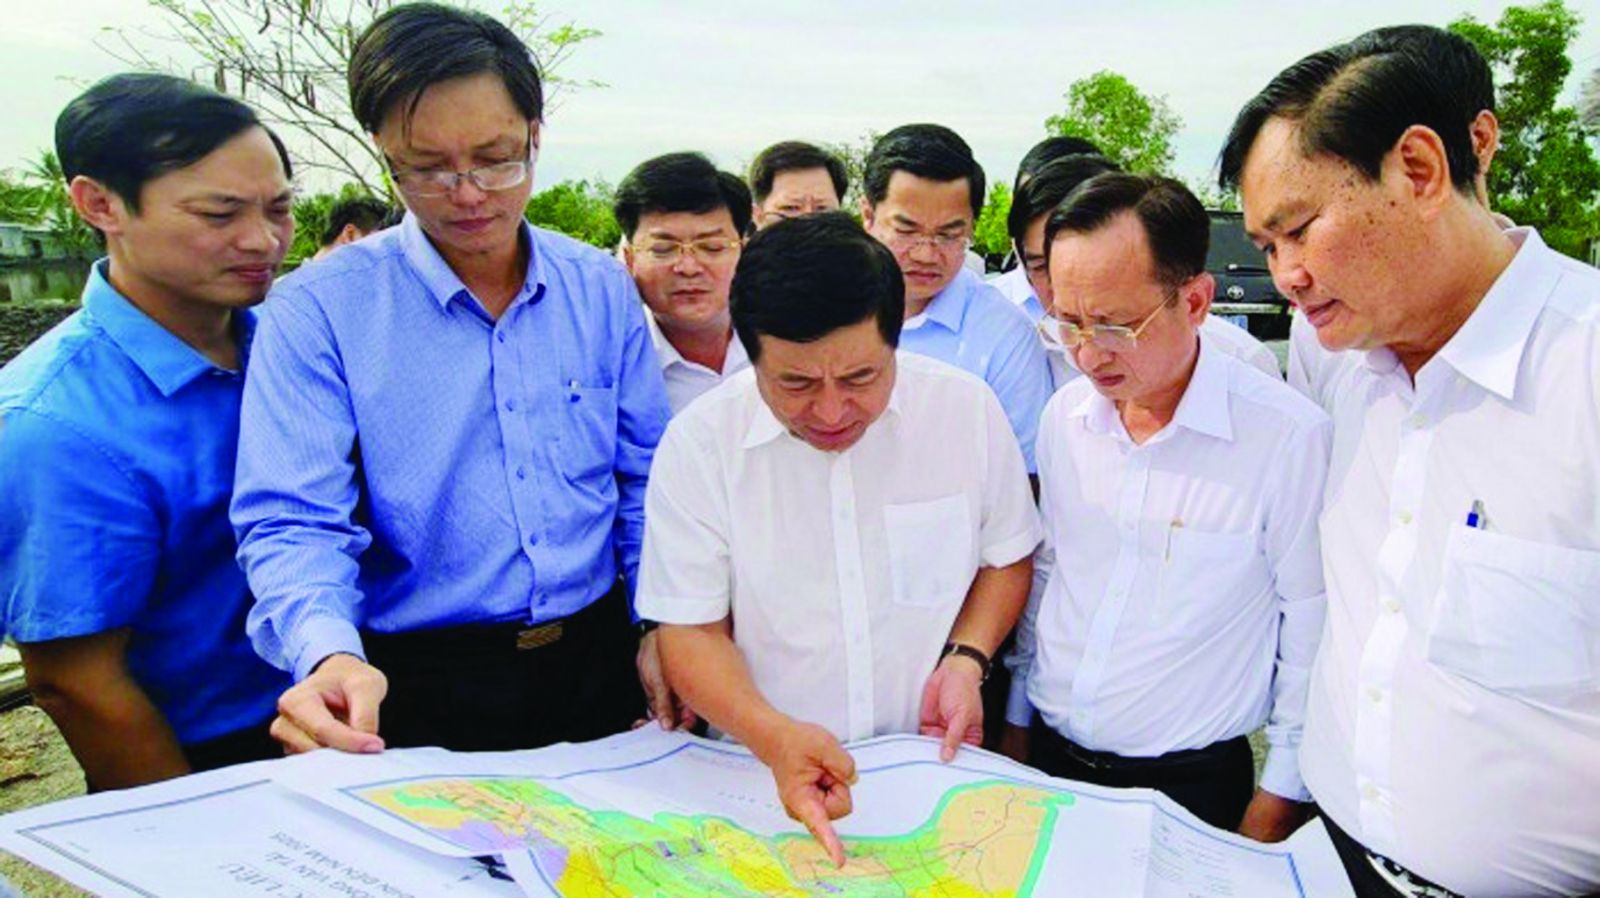  Đoàn công tác của Bộ Kế hoạch và Đầu tư cùng lãnh đạo tỉnh Bạc Liêu khảo sát thực địa tại dự án tuyến đường từ cầu Phước Long II (huyện Phước Long) đến Ba Đình (huyện Hồng Dân), nối với đường Hồ Chí 